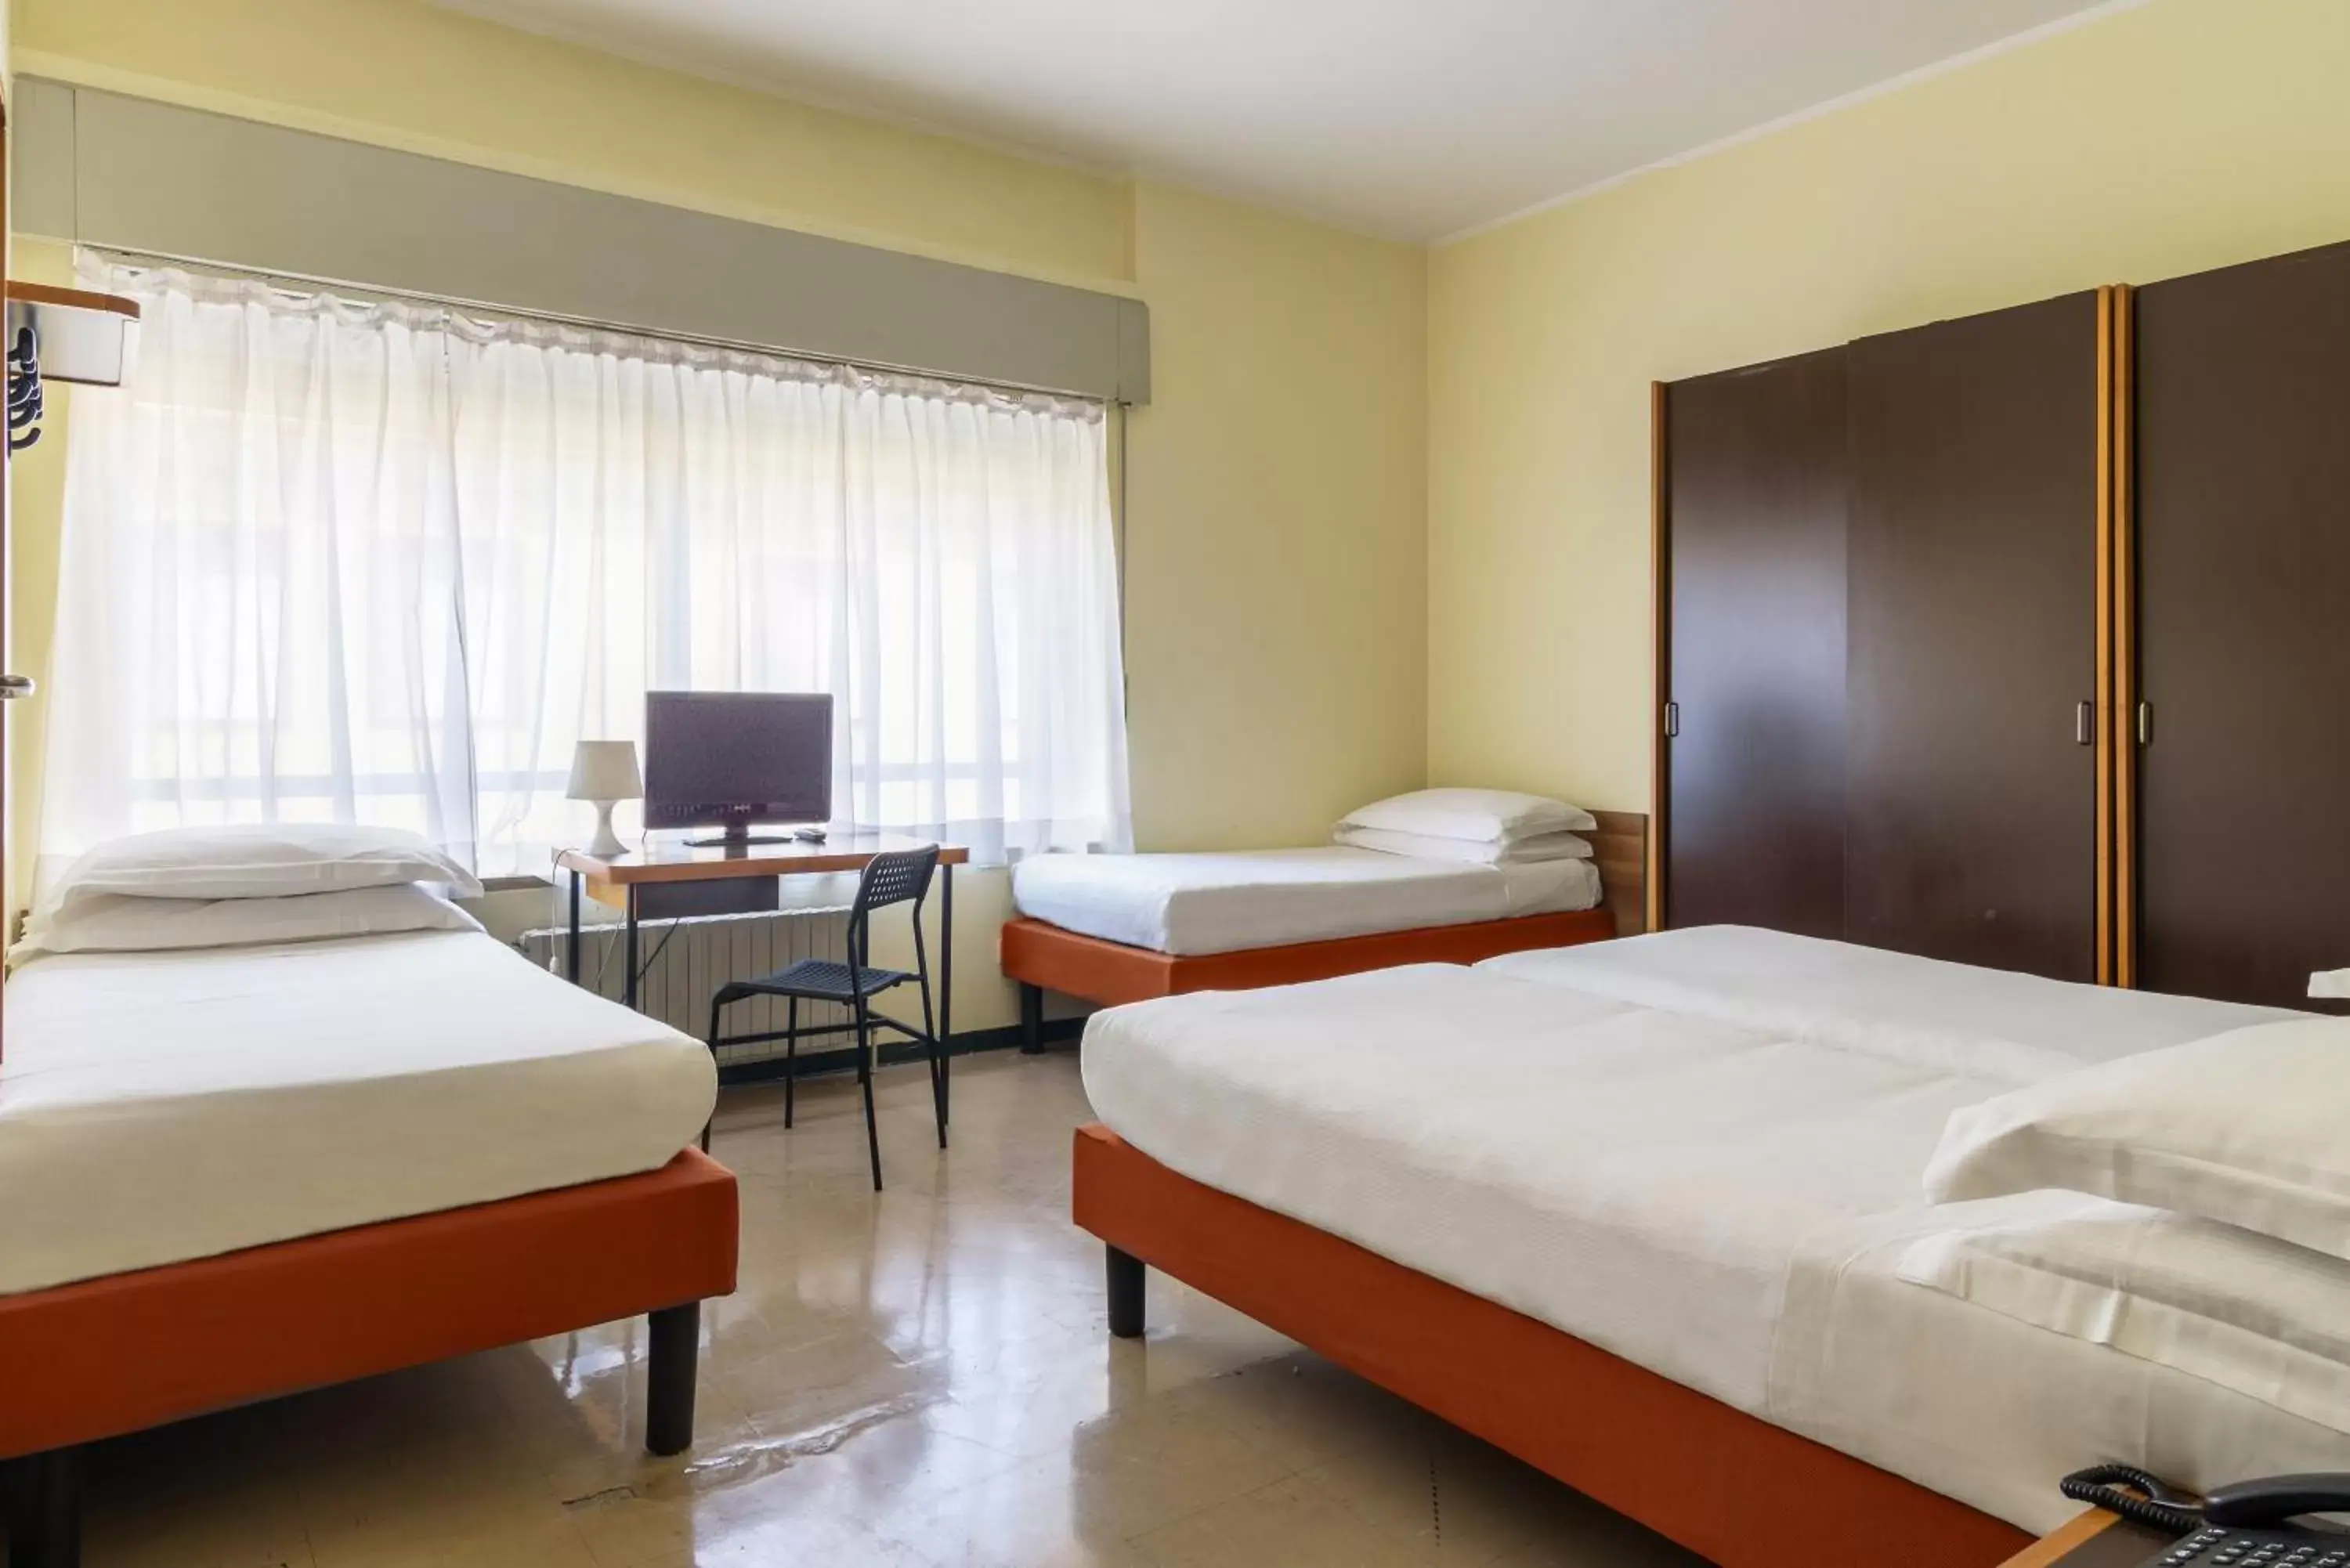 Bedroom, Bed in B&B Hotel Milano Ornato